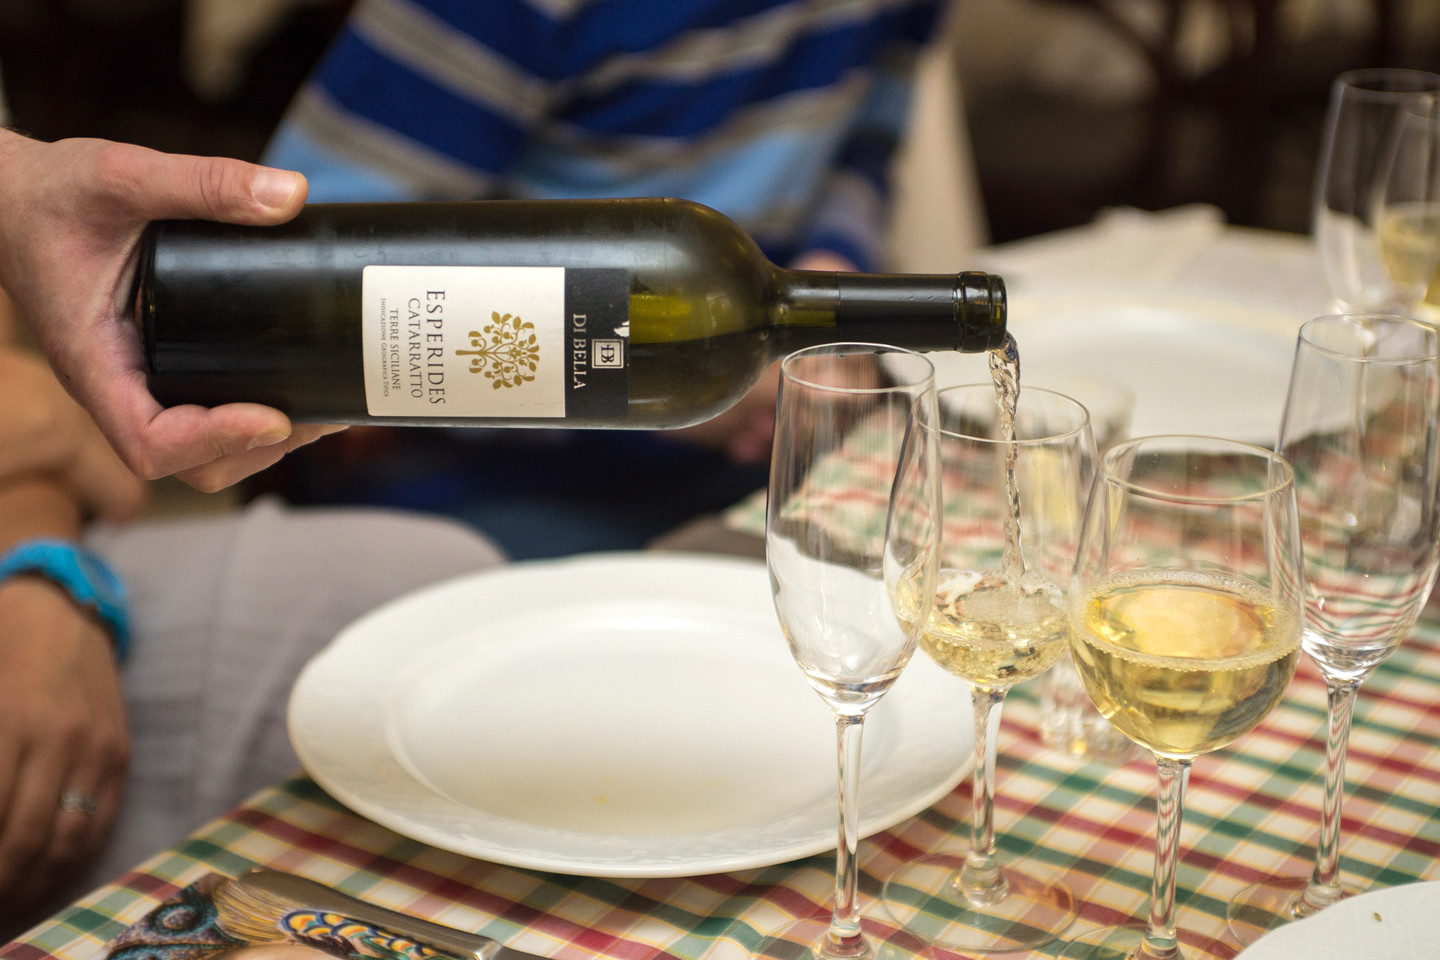  Prie aštuonkojo priderintas sicilietiškas vynas iš 'Catarratto' vynuogių.<br> L.Ruškio nuotr.